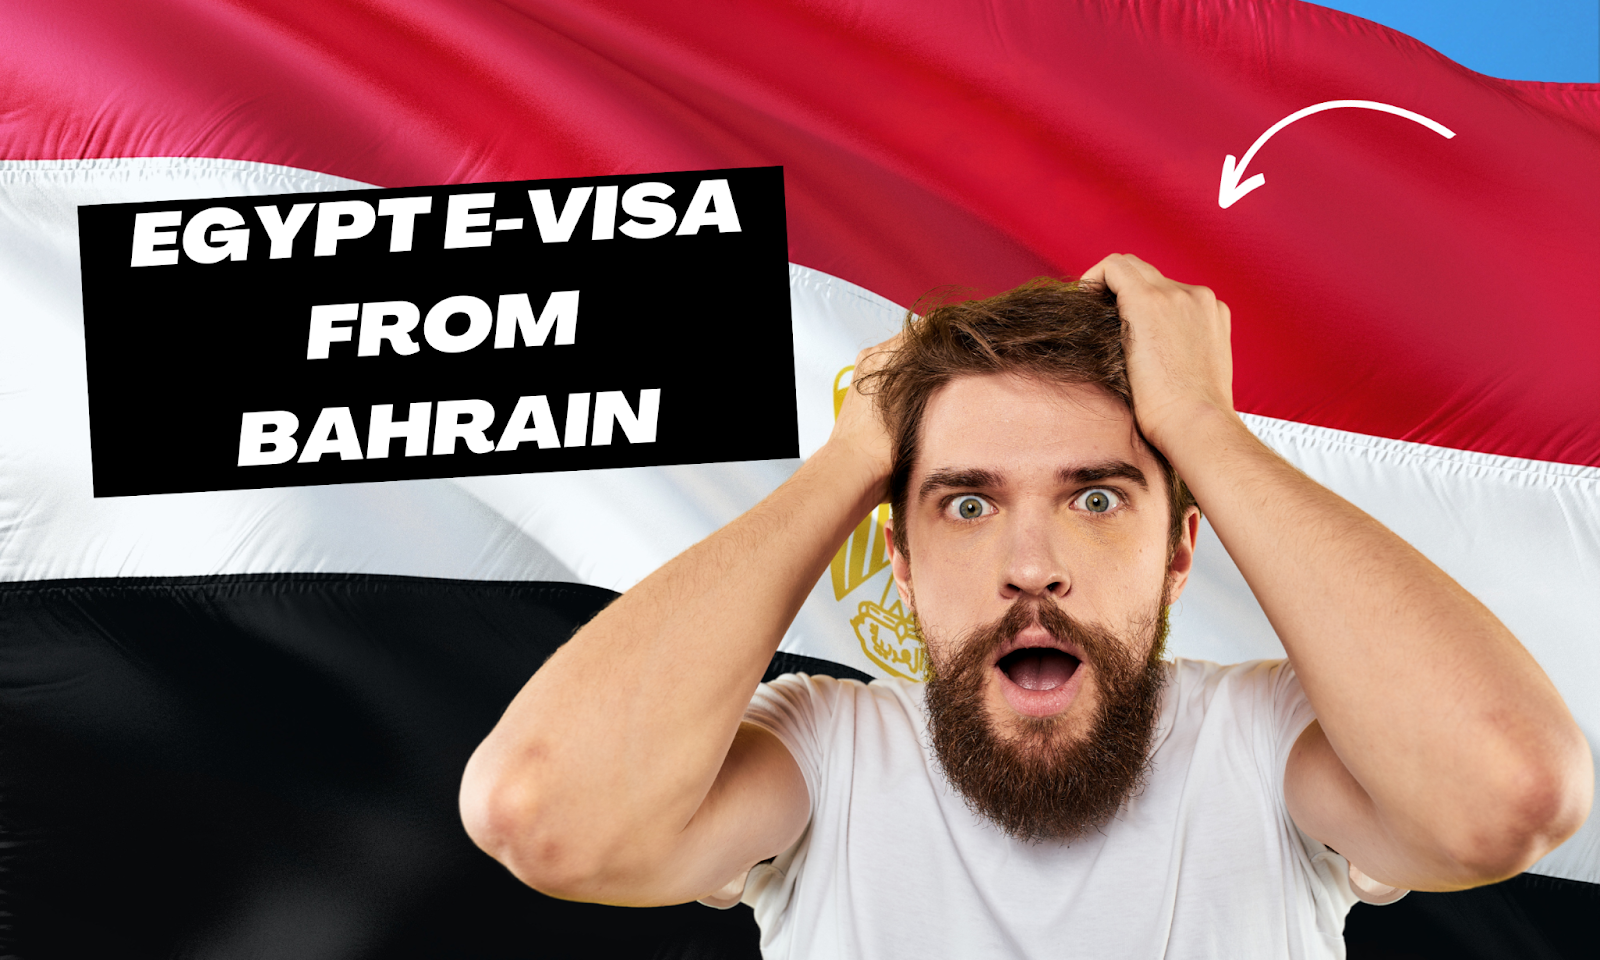 Egypt e-Visa from Bahrain